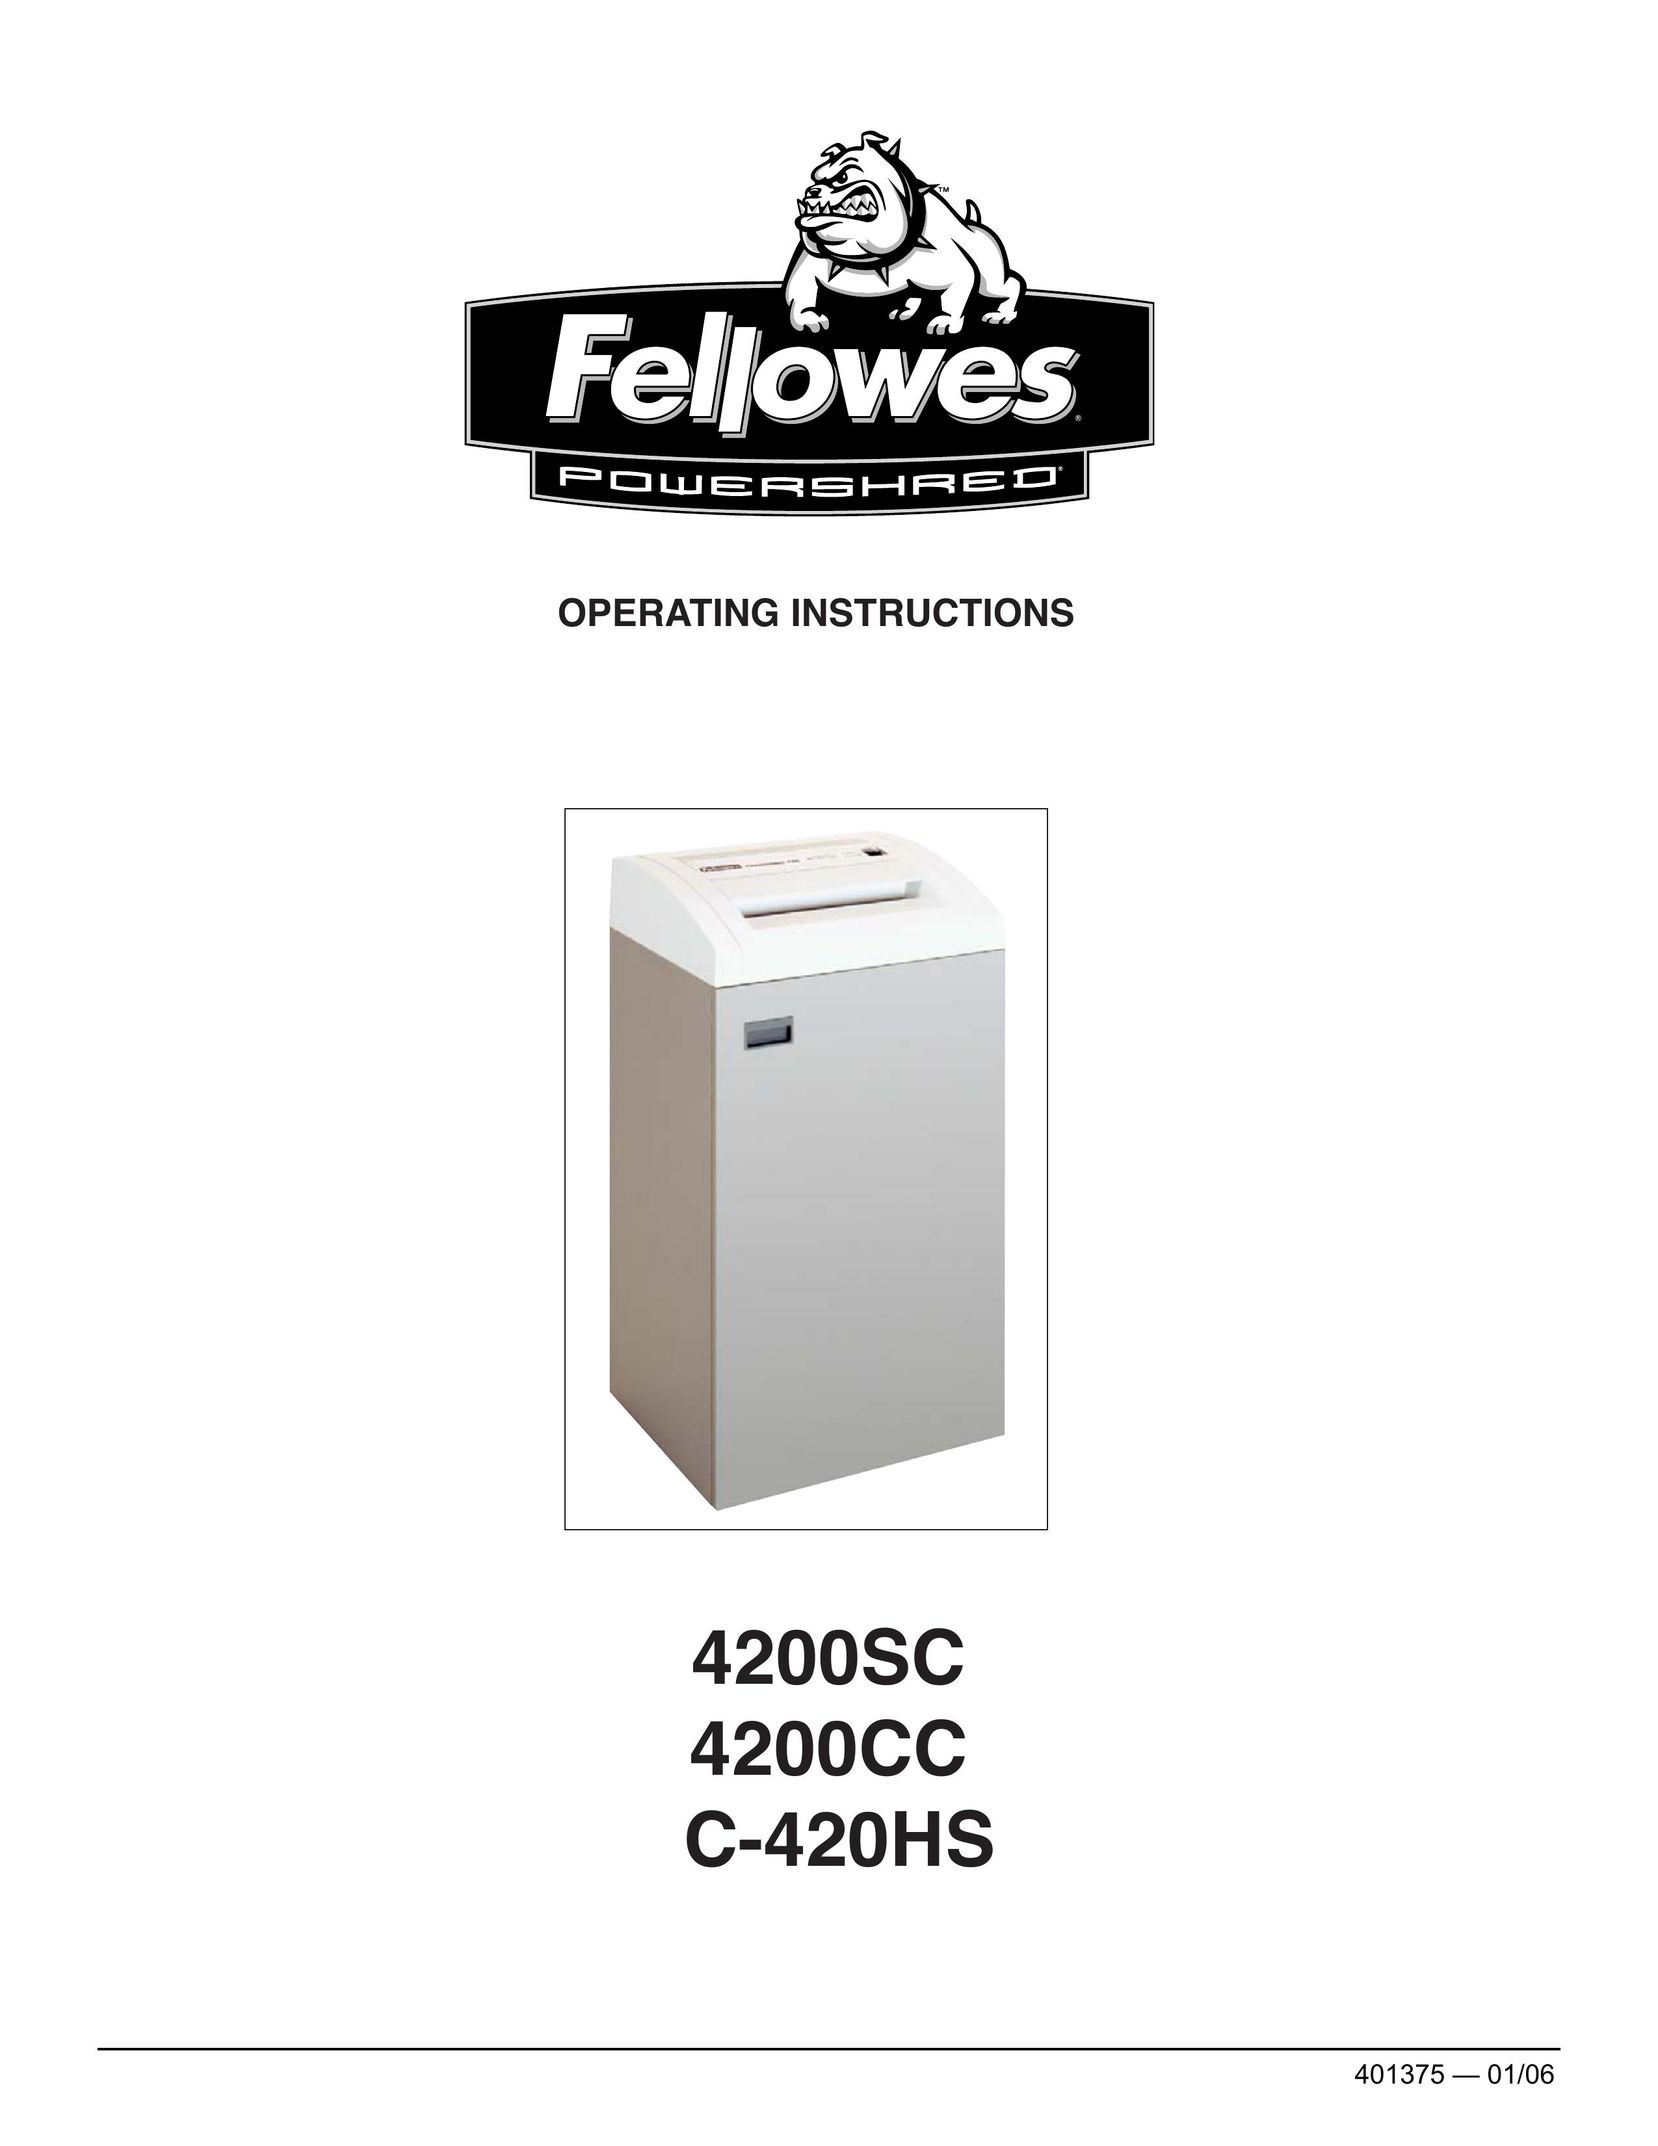 Fellowes 4200SC Paper Shredder User Manual